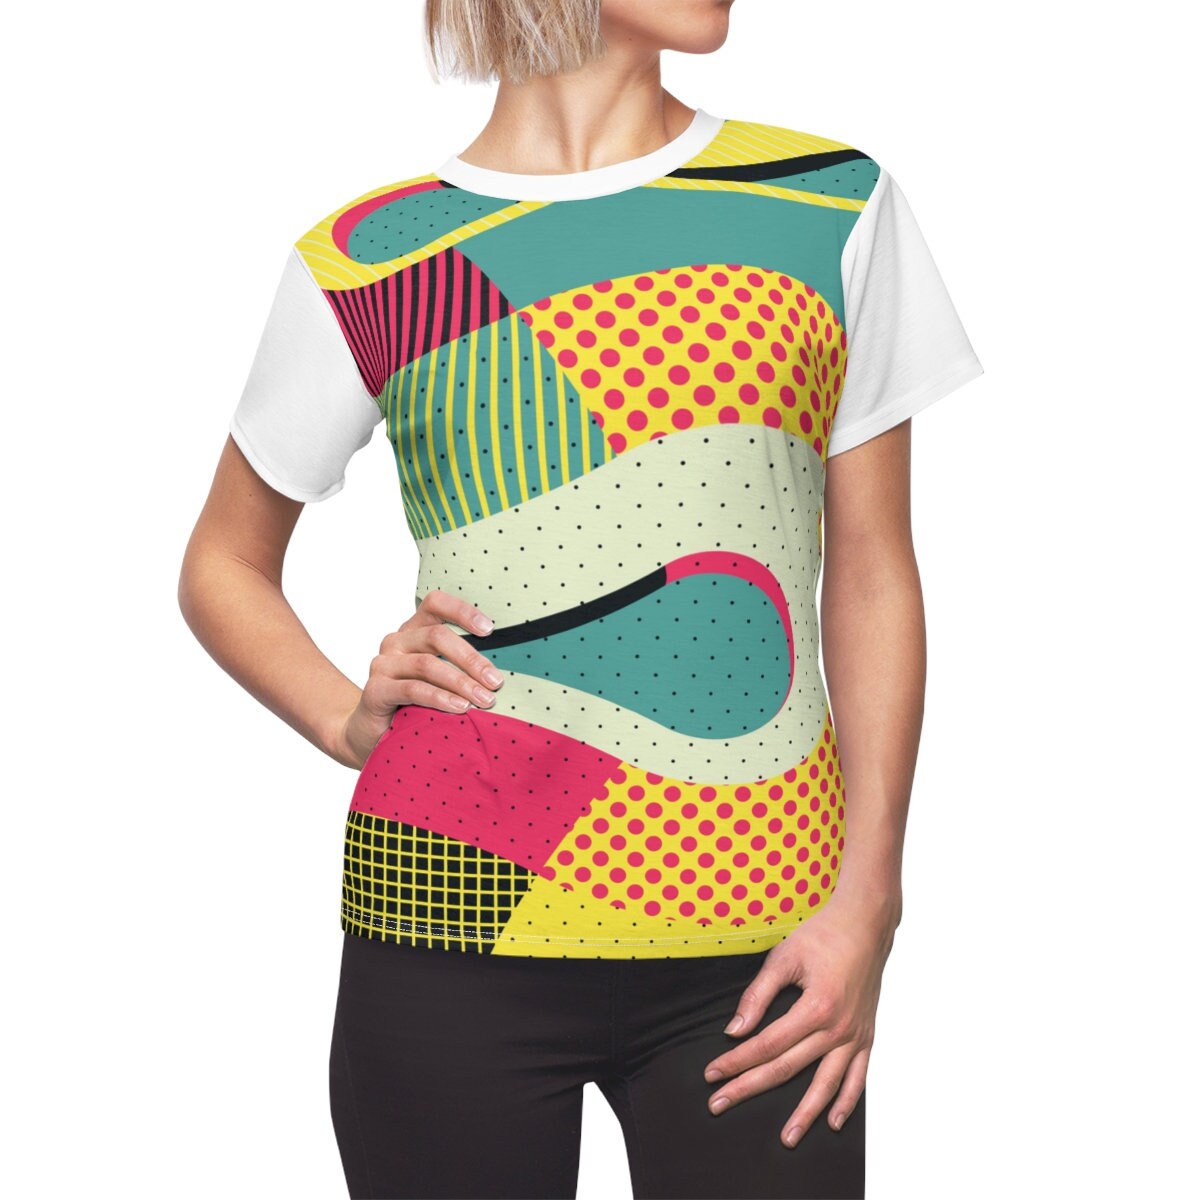 80er-Jahre-New-Wave-T-Shirt, Vintage-80er-Stil-T-Shirt, 80er-Abstract-Shirt, Damen-80er-T-Shirt, Retro-80er-T-Shirt, 80er-Vintage-T-Shirt, mehrfarbig